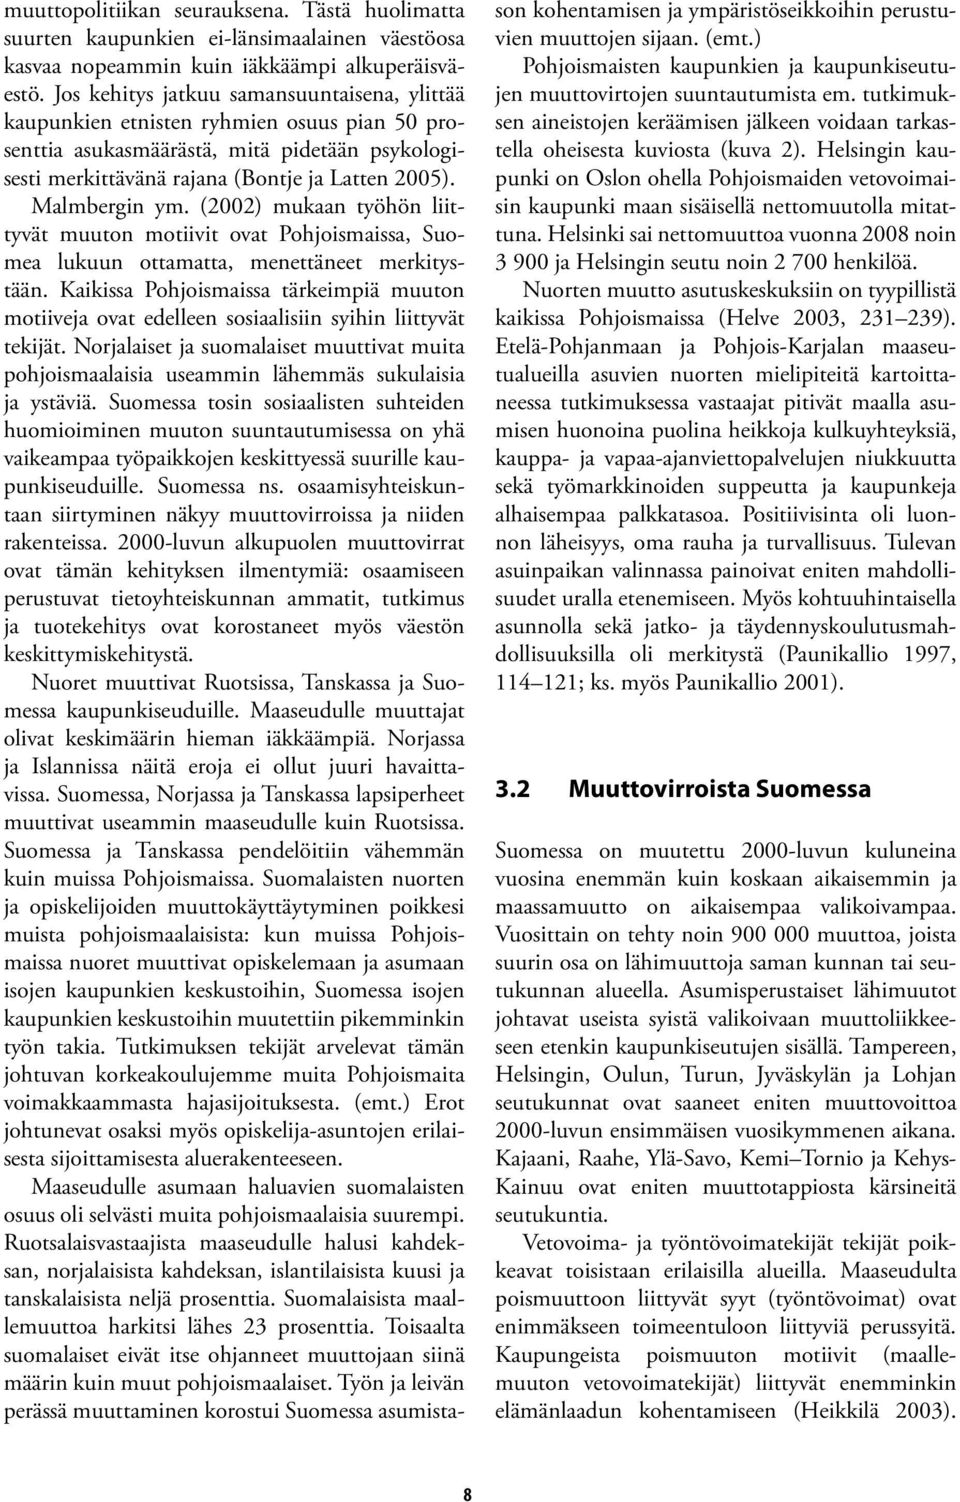 Malmbergin ym. (2002) mukaan työhön liittyvät muuton motiivit ovat Pohjoismaissa, Suomea lukuun ottamatta, menettäneet merkitystään.